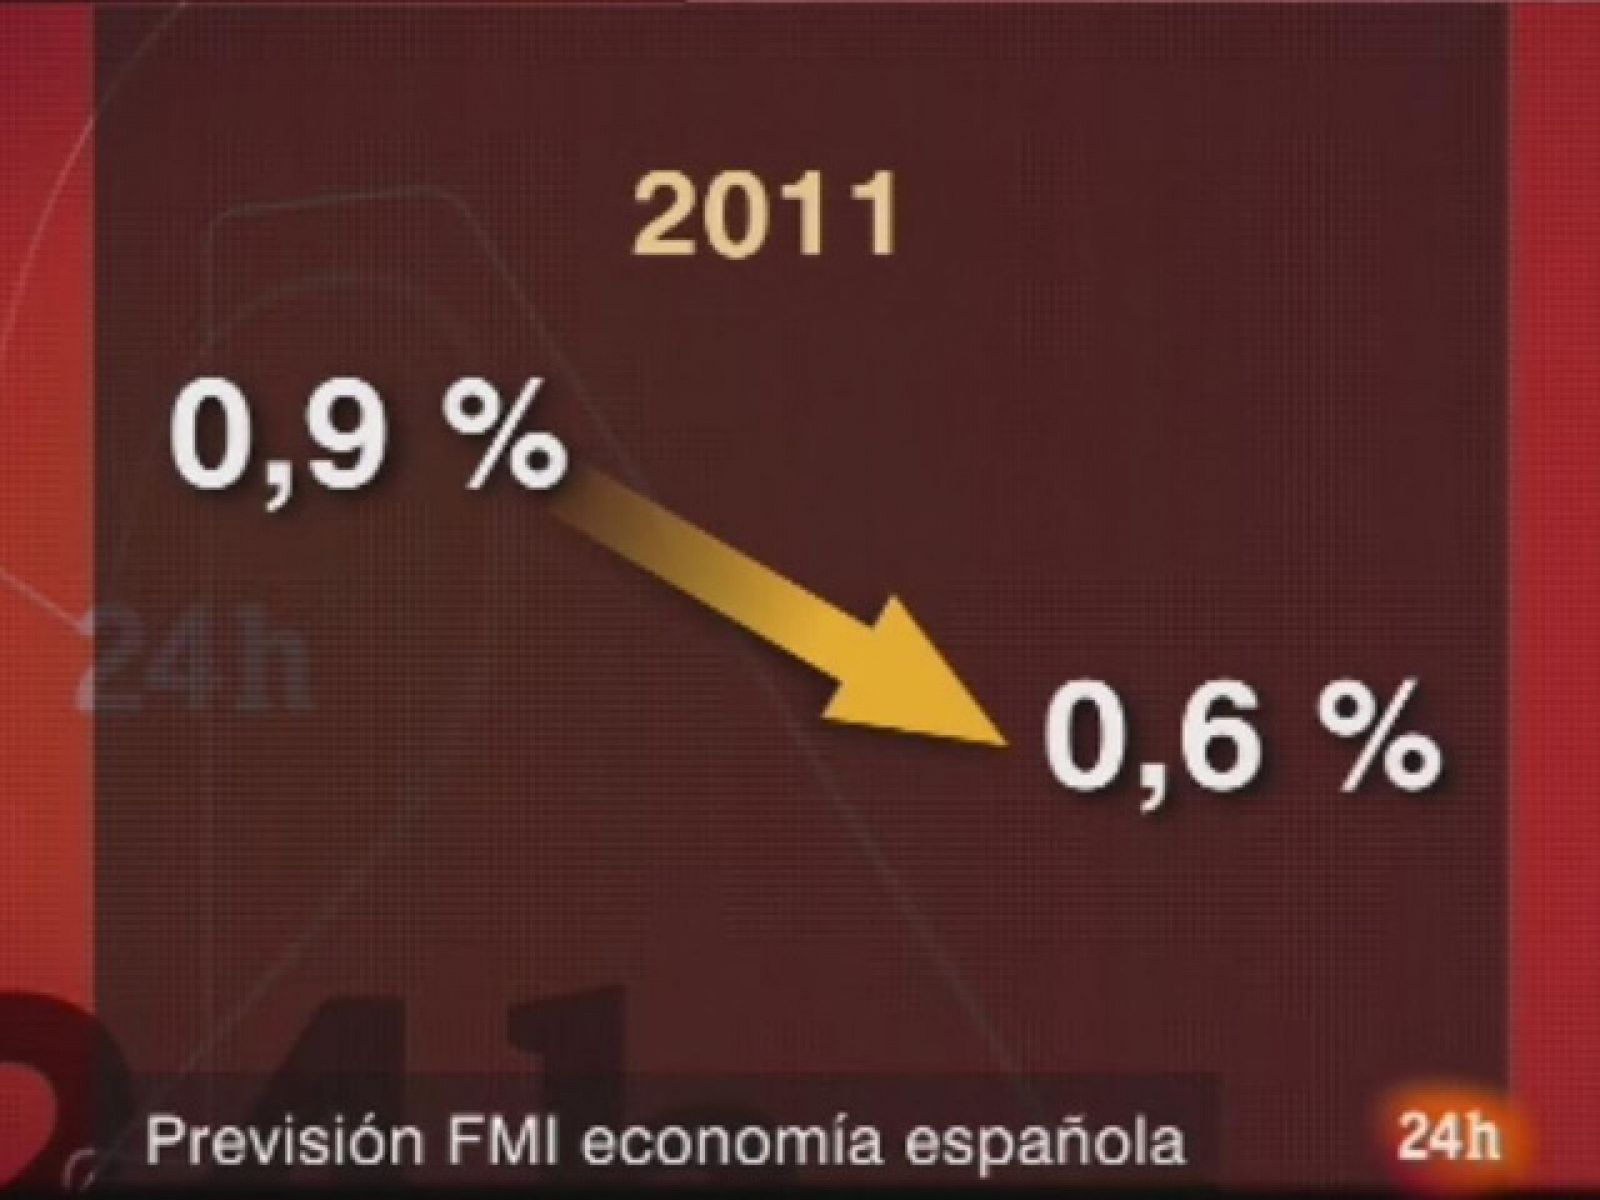  El Fondo Monetario Internacional (FMI) presenta sus previsiones de crecimiento de las economías del mundo para 2010 y 2011.